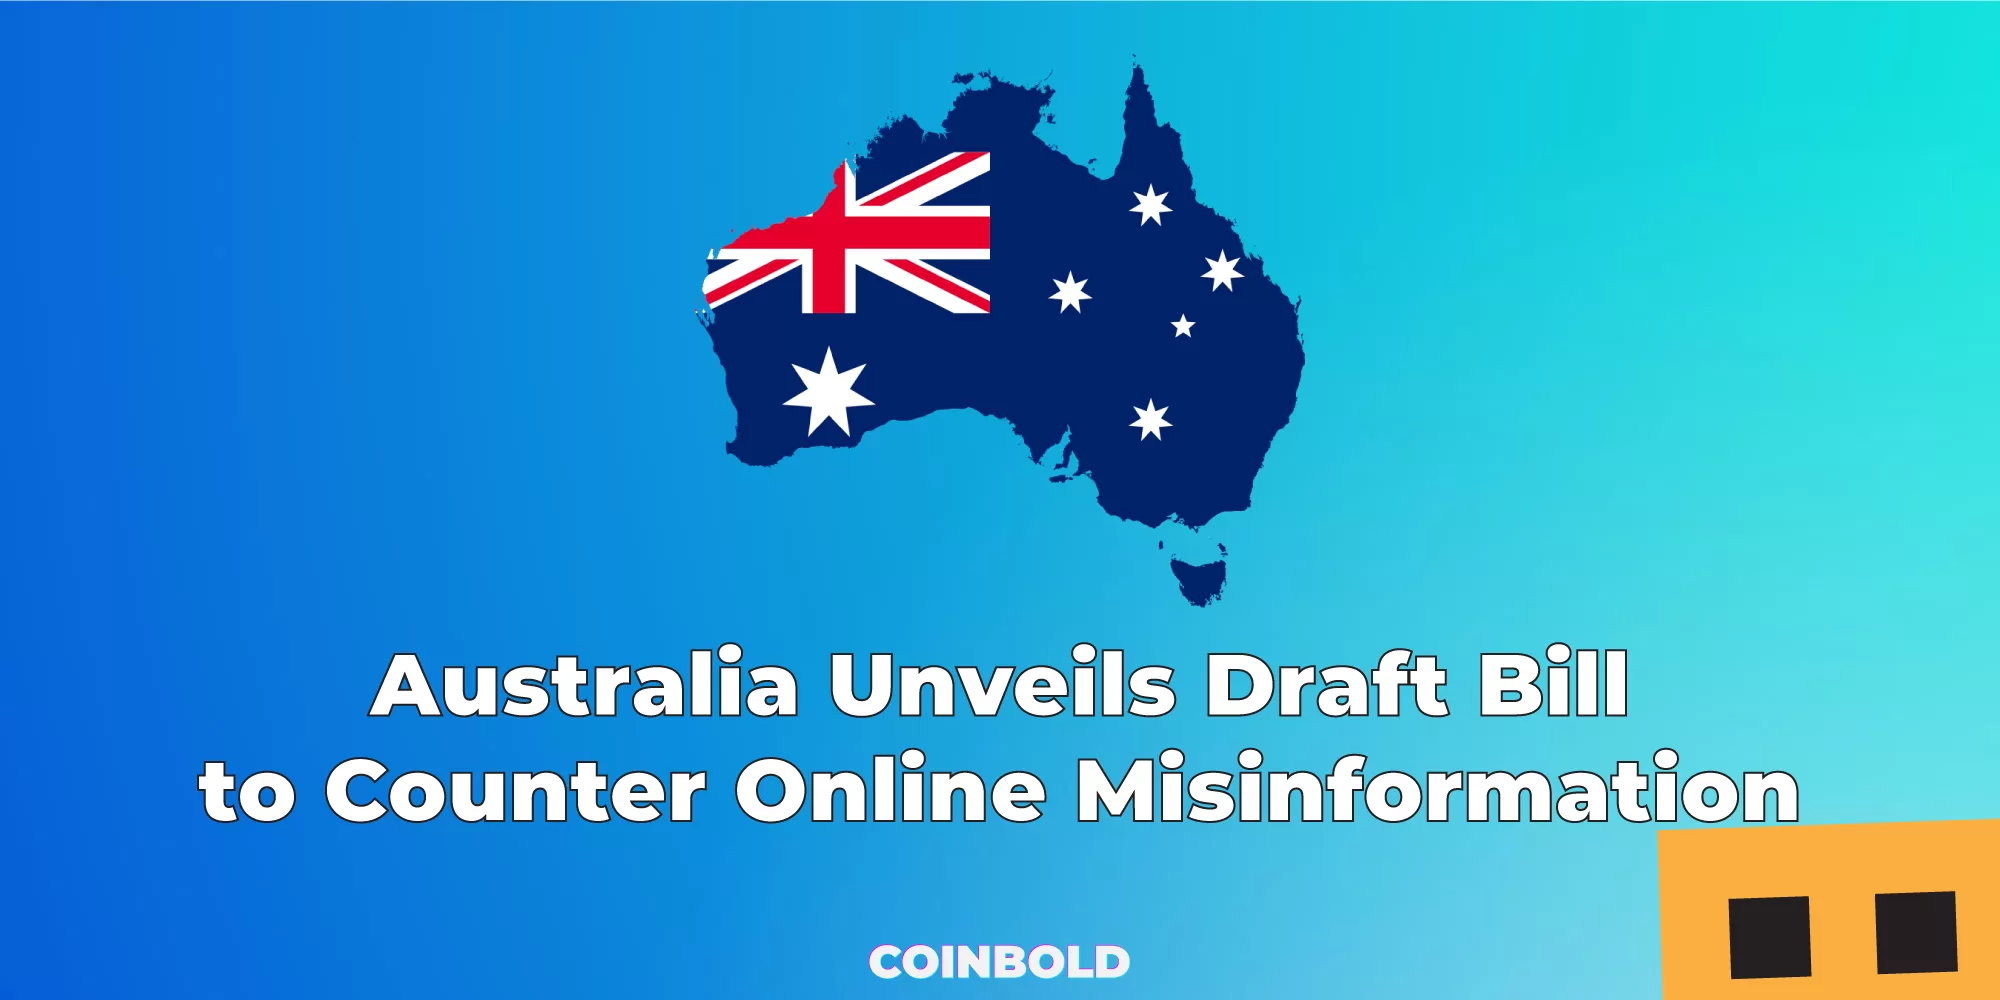 Australia Unveils Draft Bill to Counter Online Misinformation